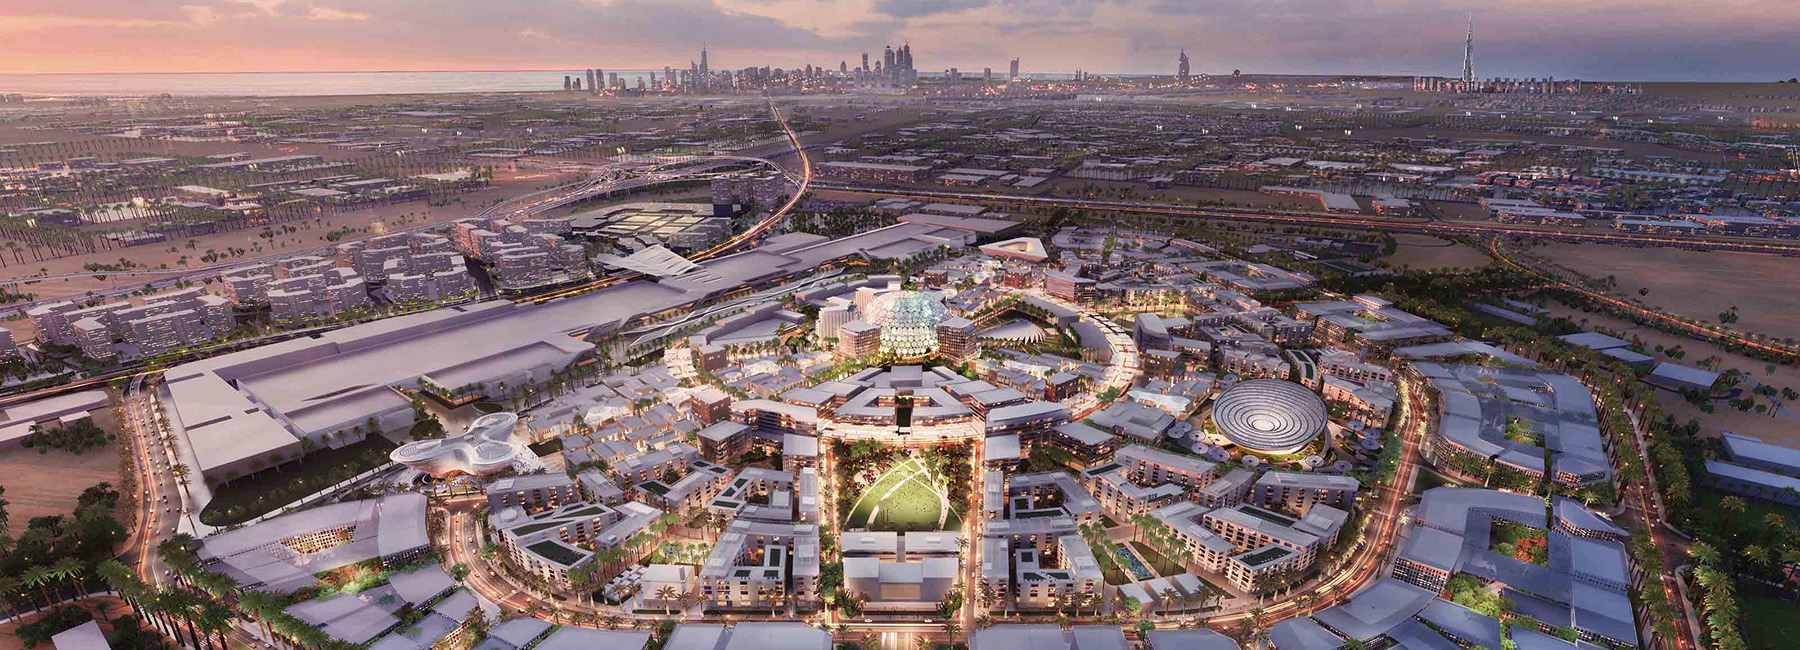 emirates expo 2020 dubai